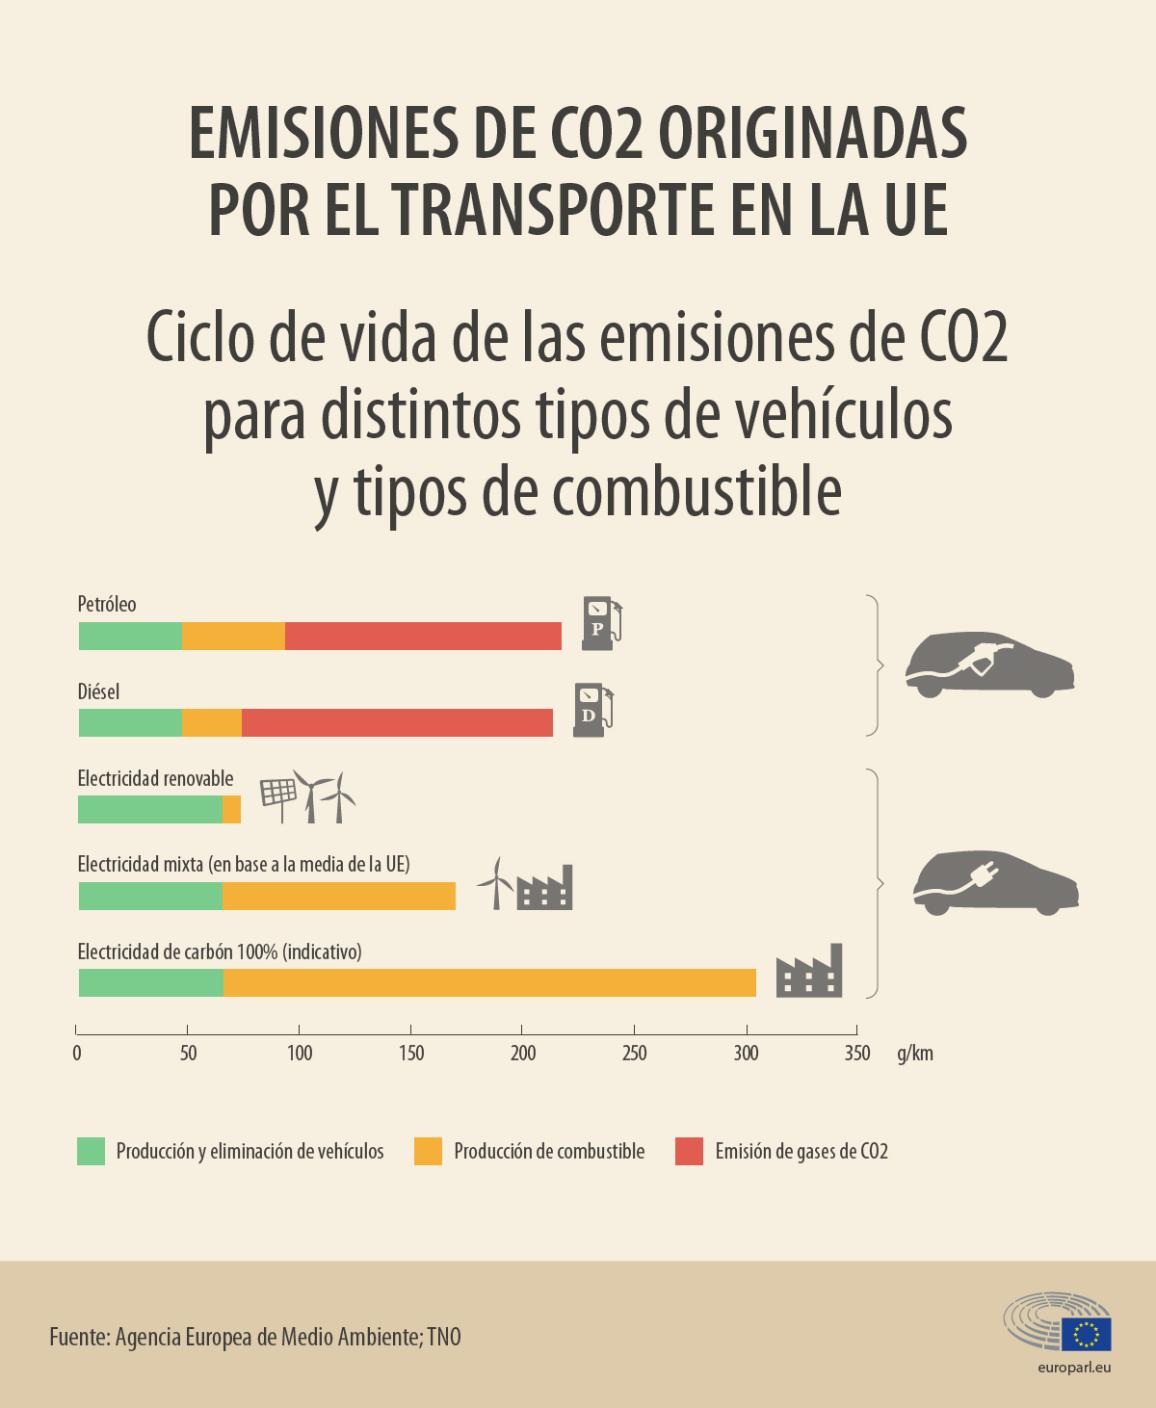 ráfico30 Comparativa del ciclo devida de las emisiones de CO2 en turismos según carburantey fuente de energía. La explicación del gráfico se detalla a continuación de la imagen.